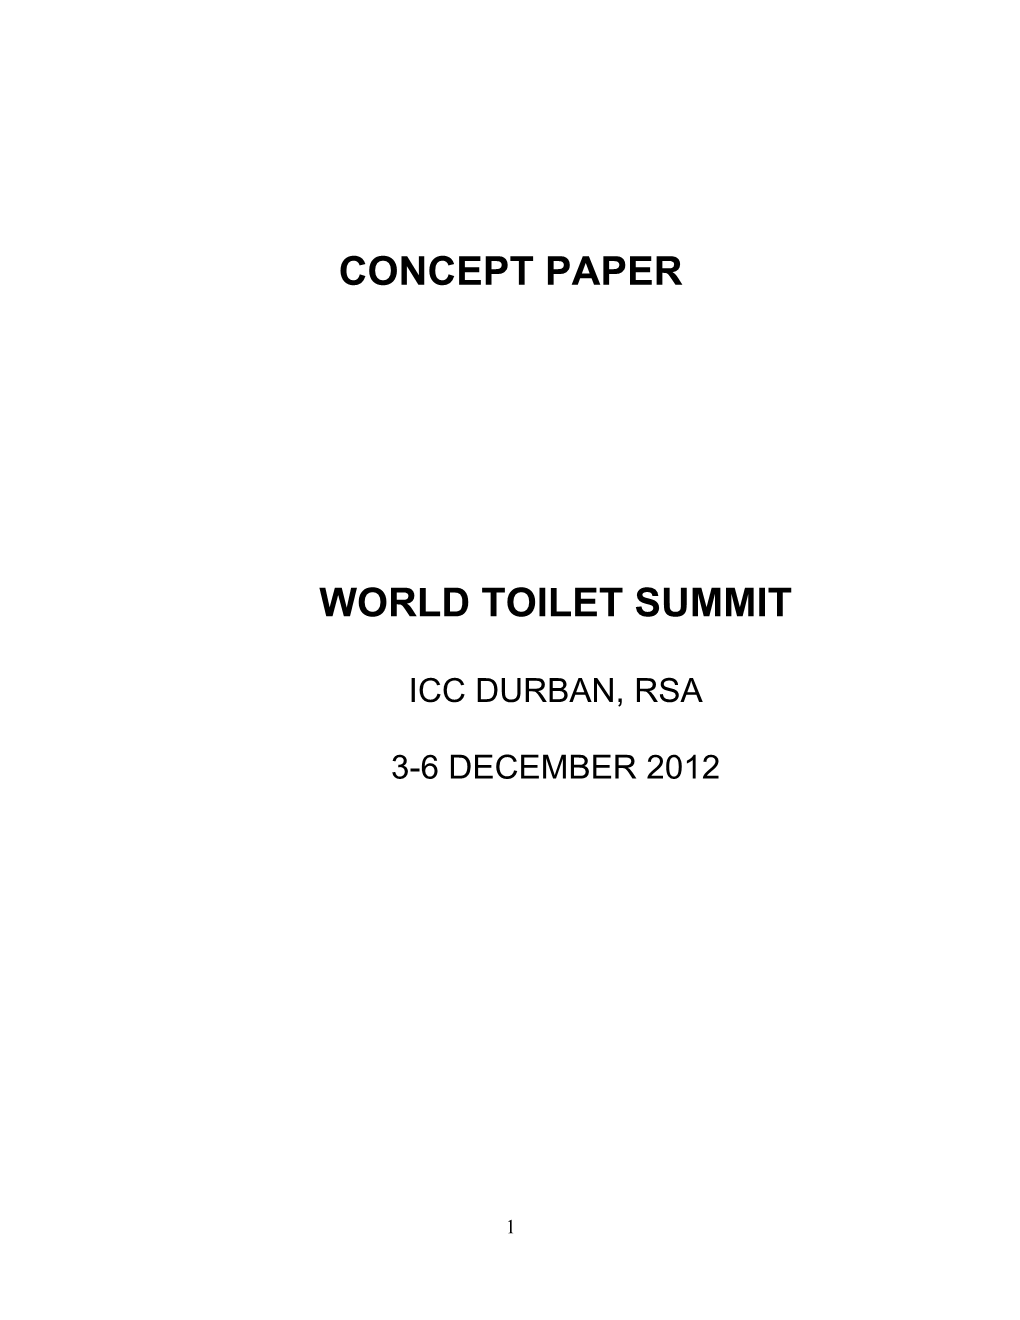 World Toilet Summit